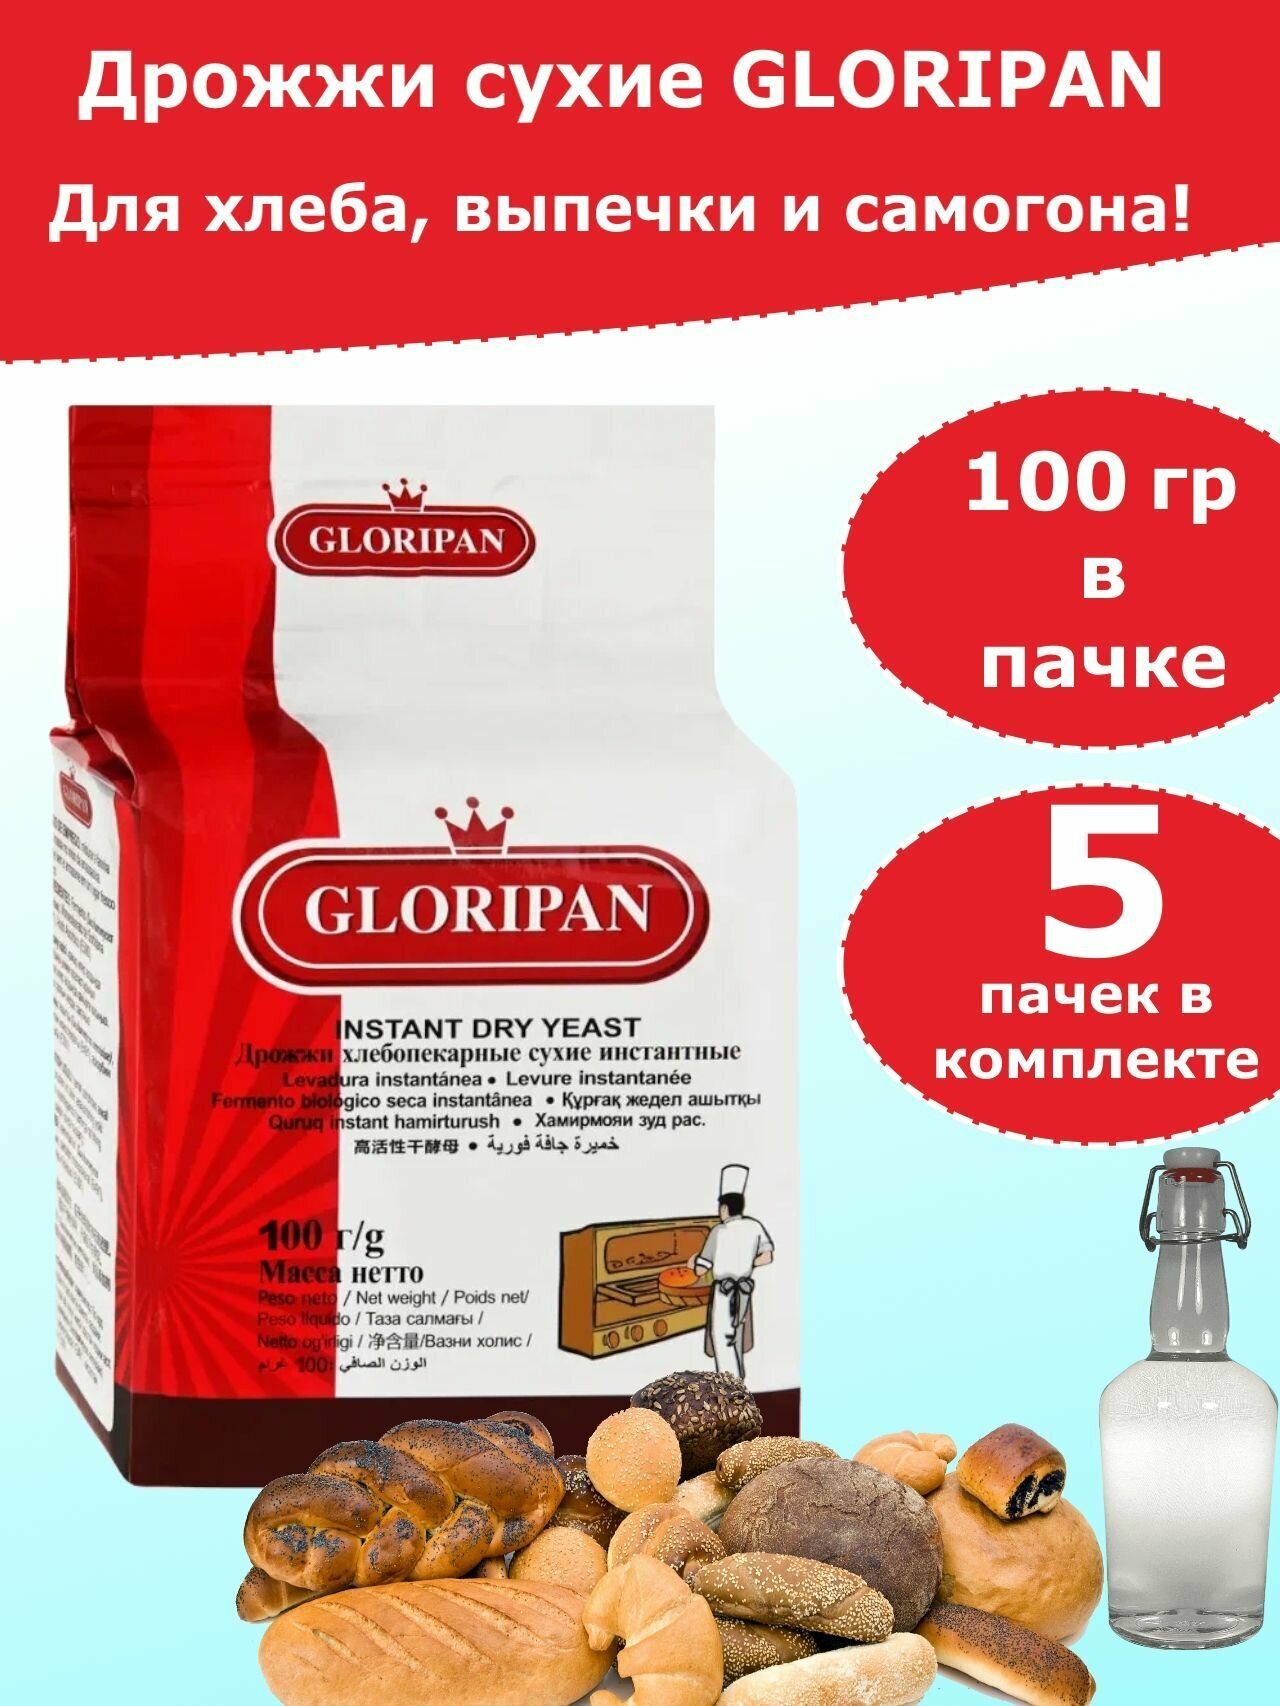 Дрожжи Глорипан для хлебопечения и для самогона, 100 гр (комплект из 5 пачек)